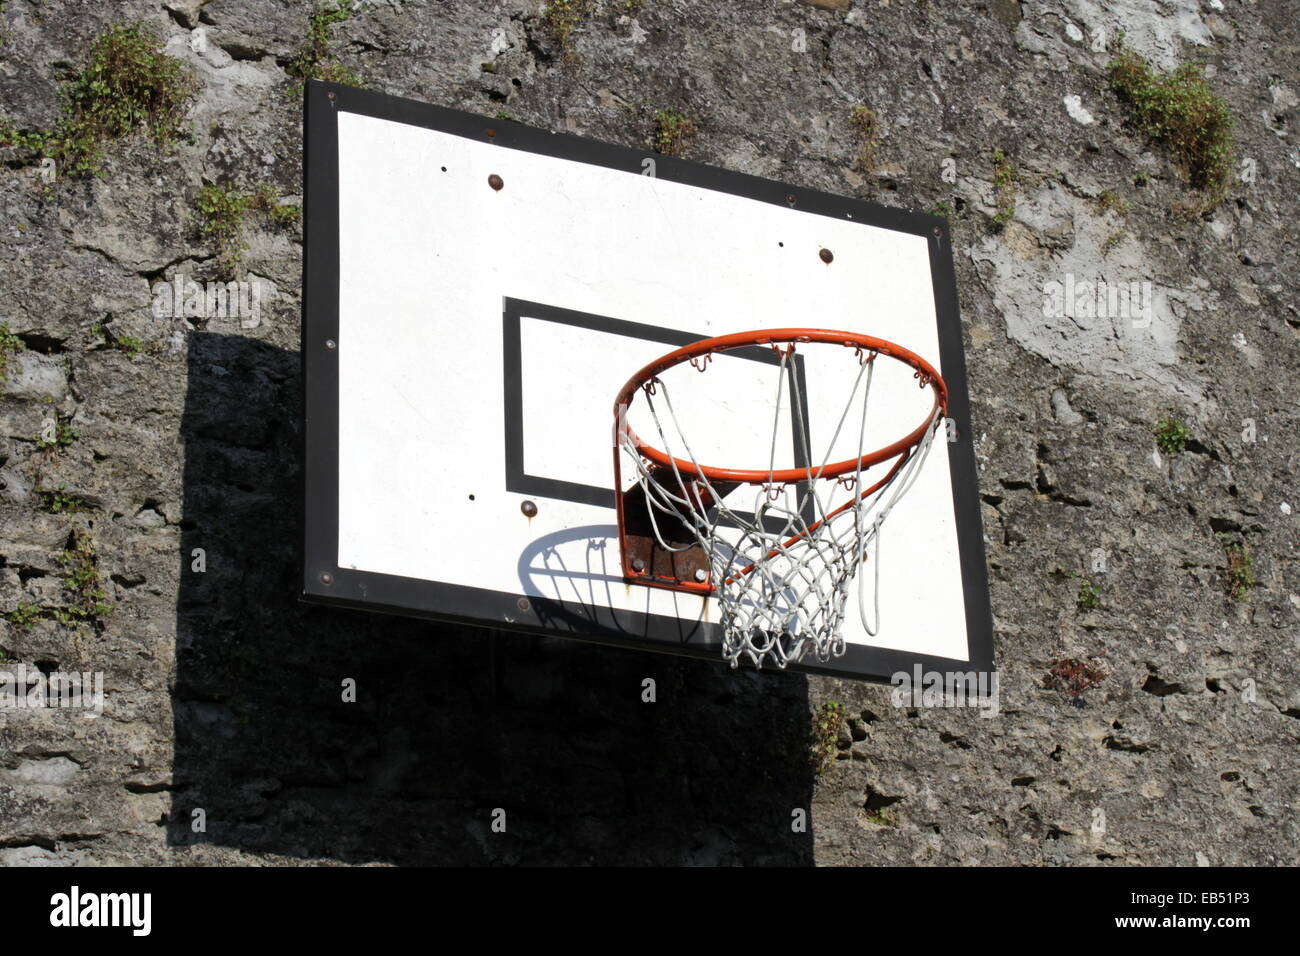 Basketballkorb gegen eine Wand in der Stadt Stockfoto